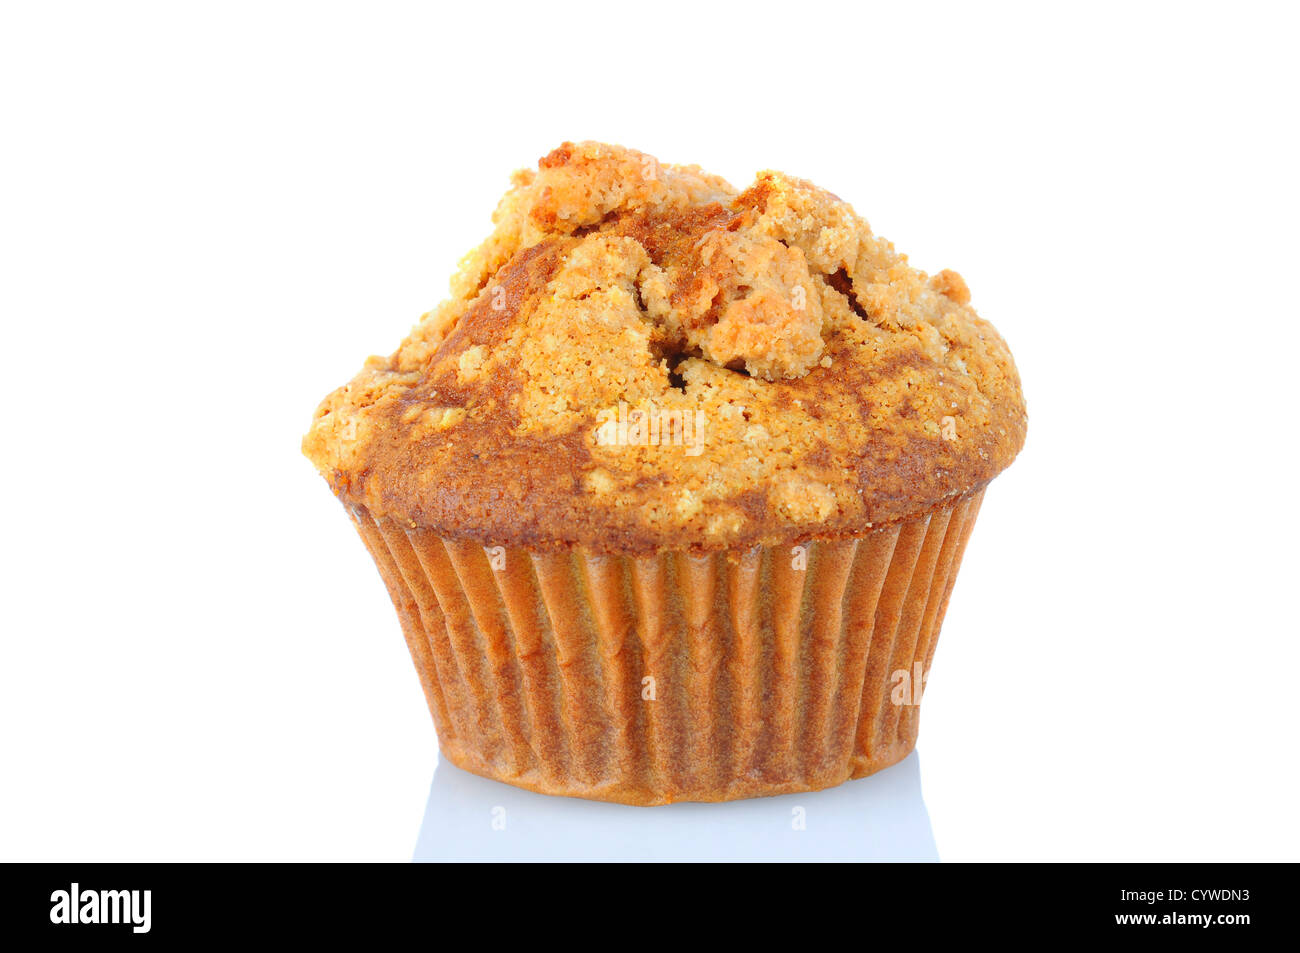 Nahaufnahme von einem Apple Crumb Muffin isoliert auf einem weißen Hintergrund. Stockfoto